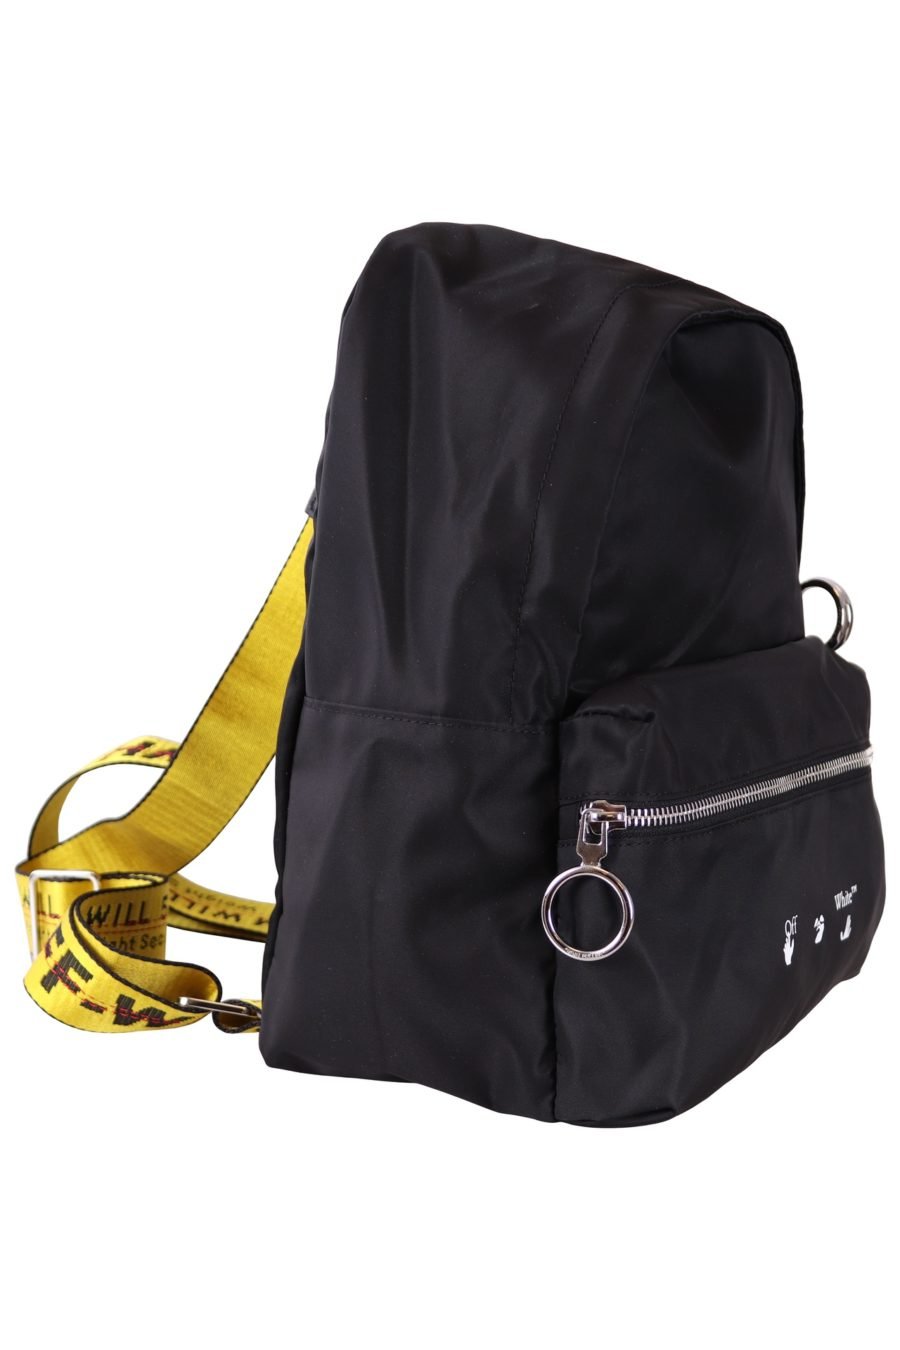 Off-White Rucksack schwarz mit Logo und gelben Trägern - 6350e5c690af9dedd830c5d112079b8c70ed98de